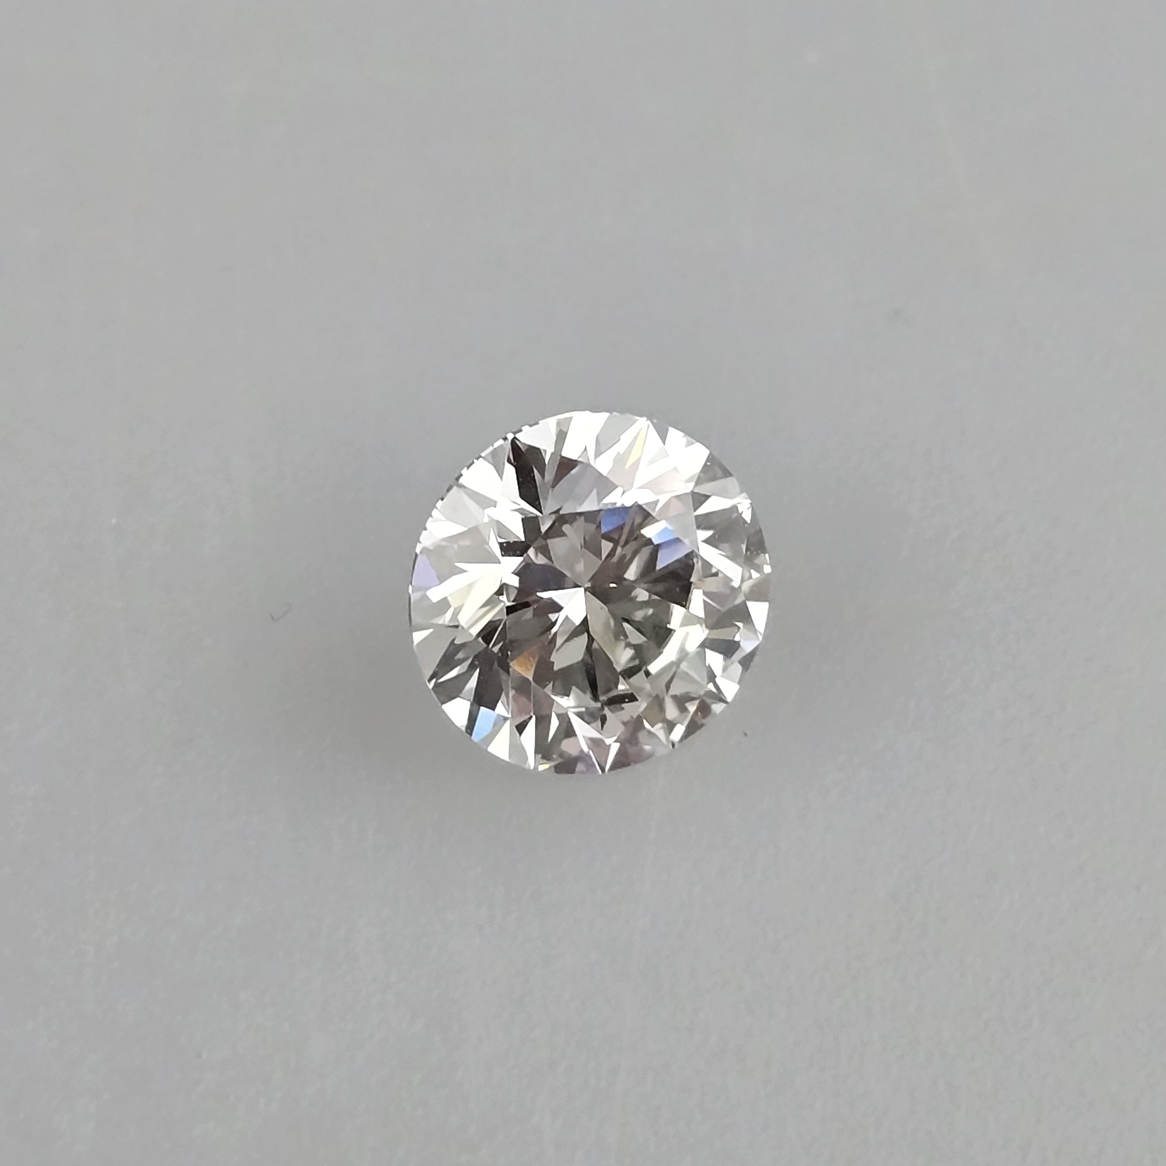 Loser Diamant von 3,03 ct. mit Lasersignatur - Labor-Brillant von idealer Qualität, Gewicht 3,03 ct - Image 3 of 8